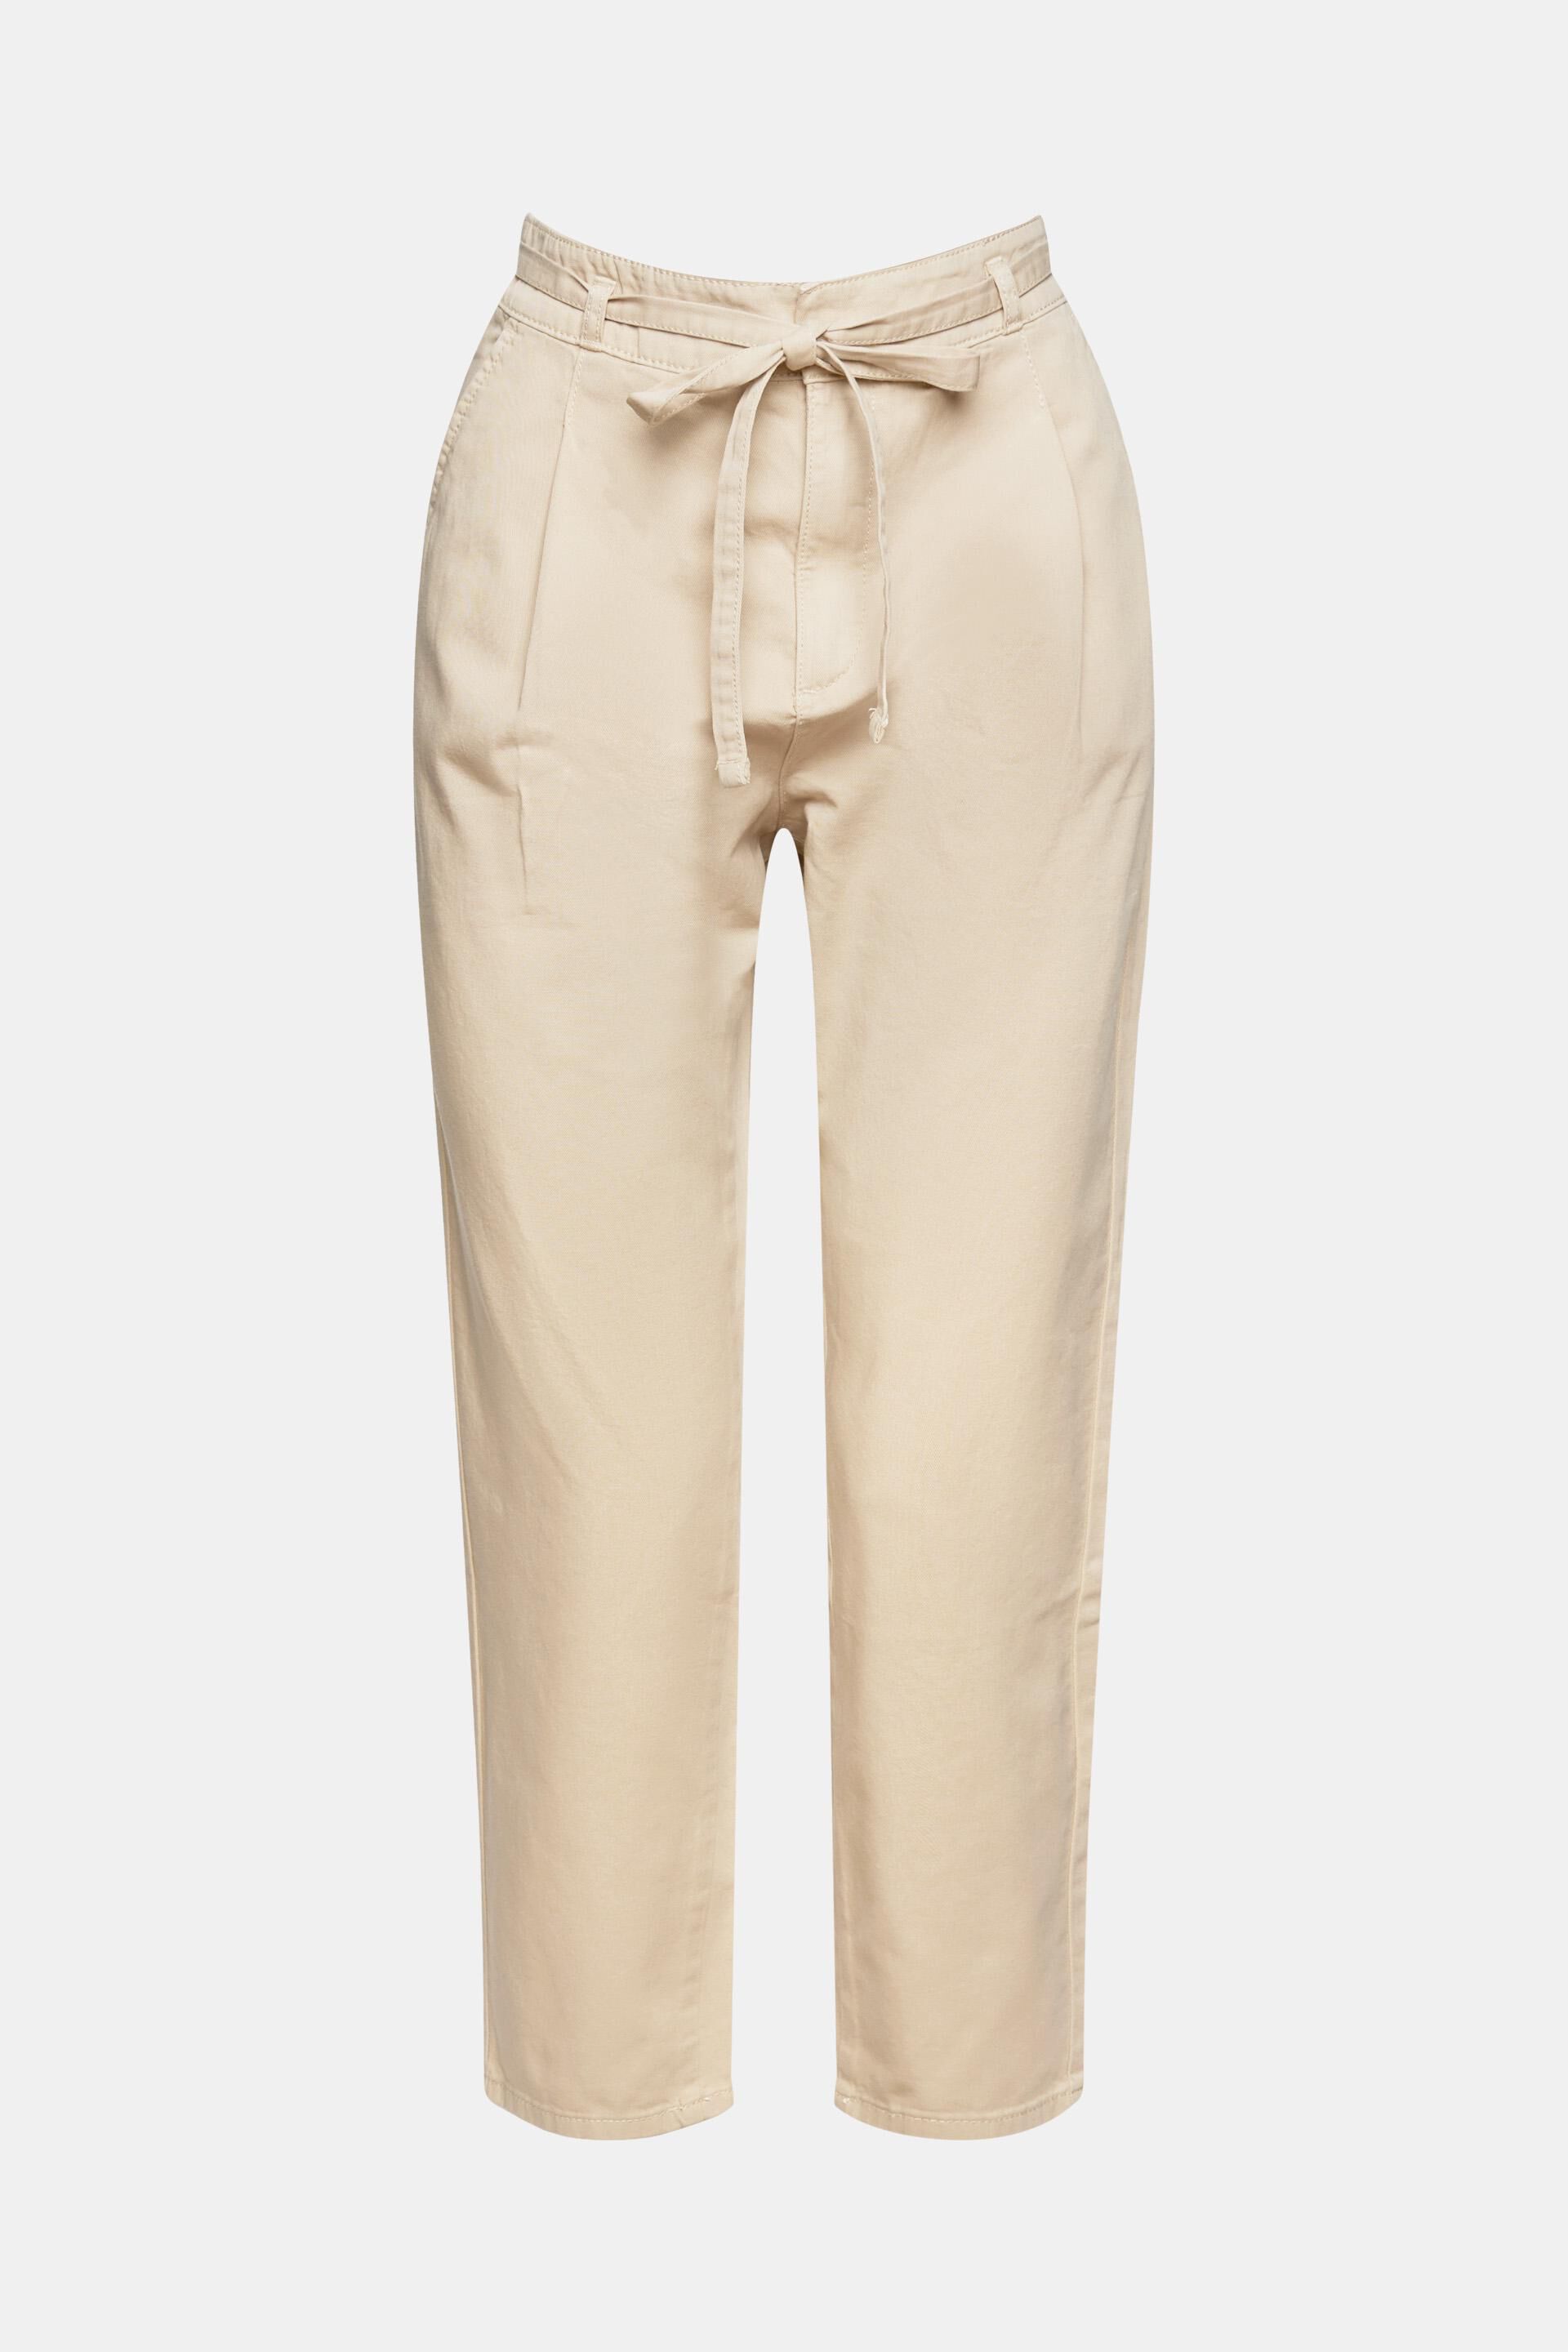 ESPRIT Collection Pantalons Femme 